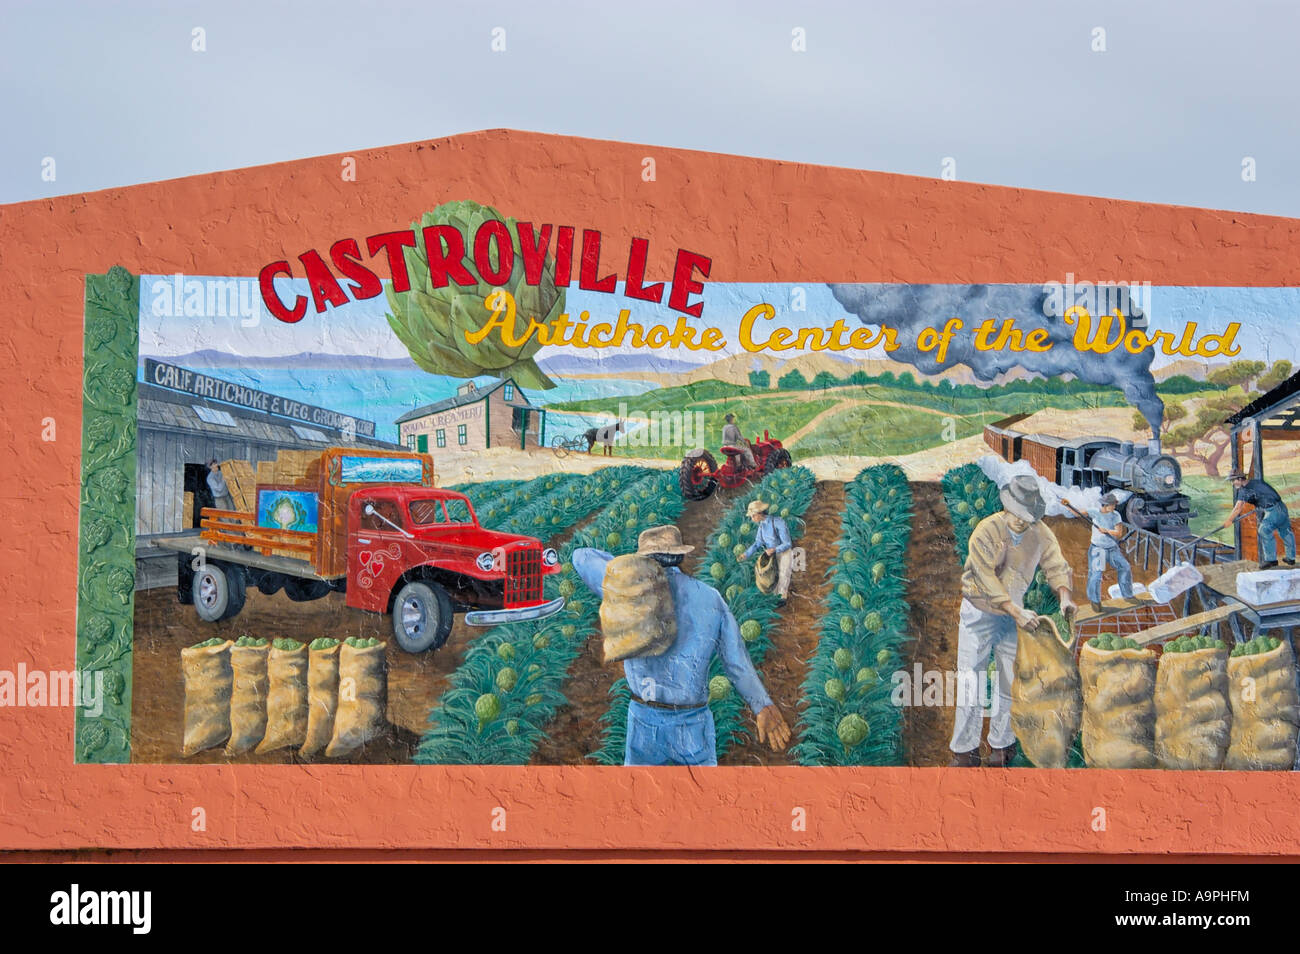 Fresque de la récolte d'artichaut dans le centre du monde d'artichaut Castroville Californie Banque D'Images